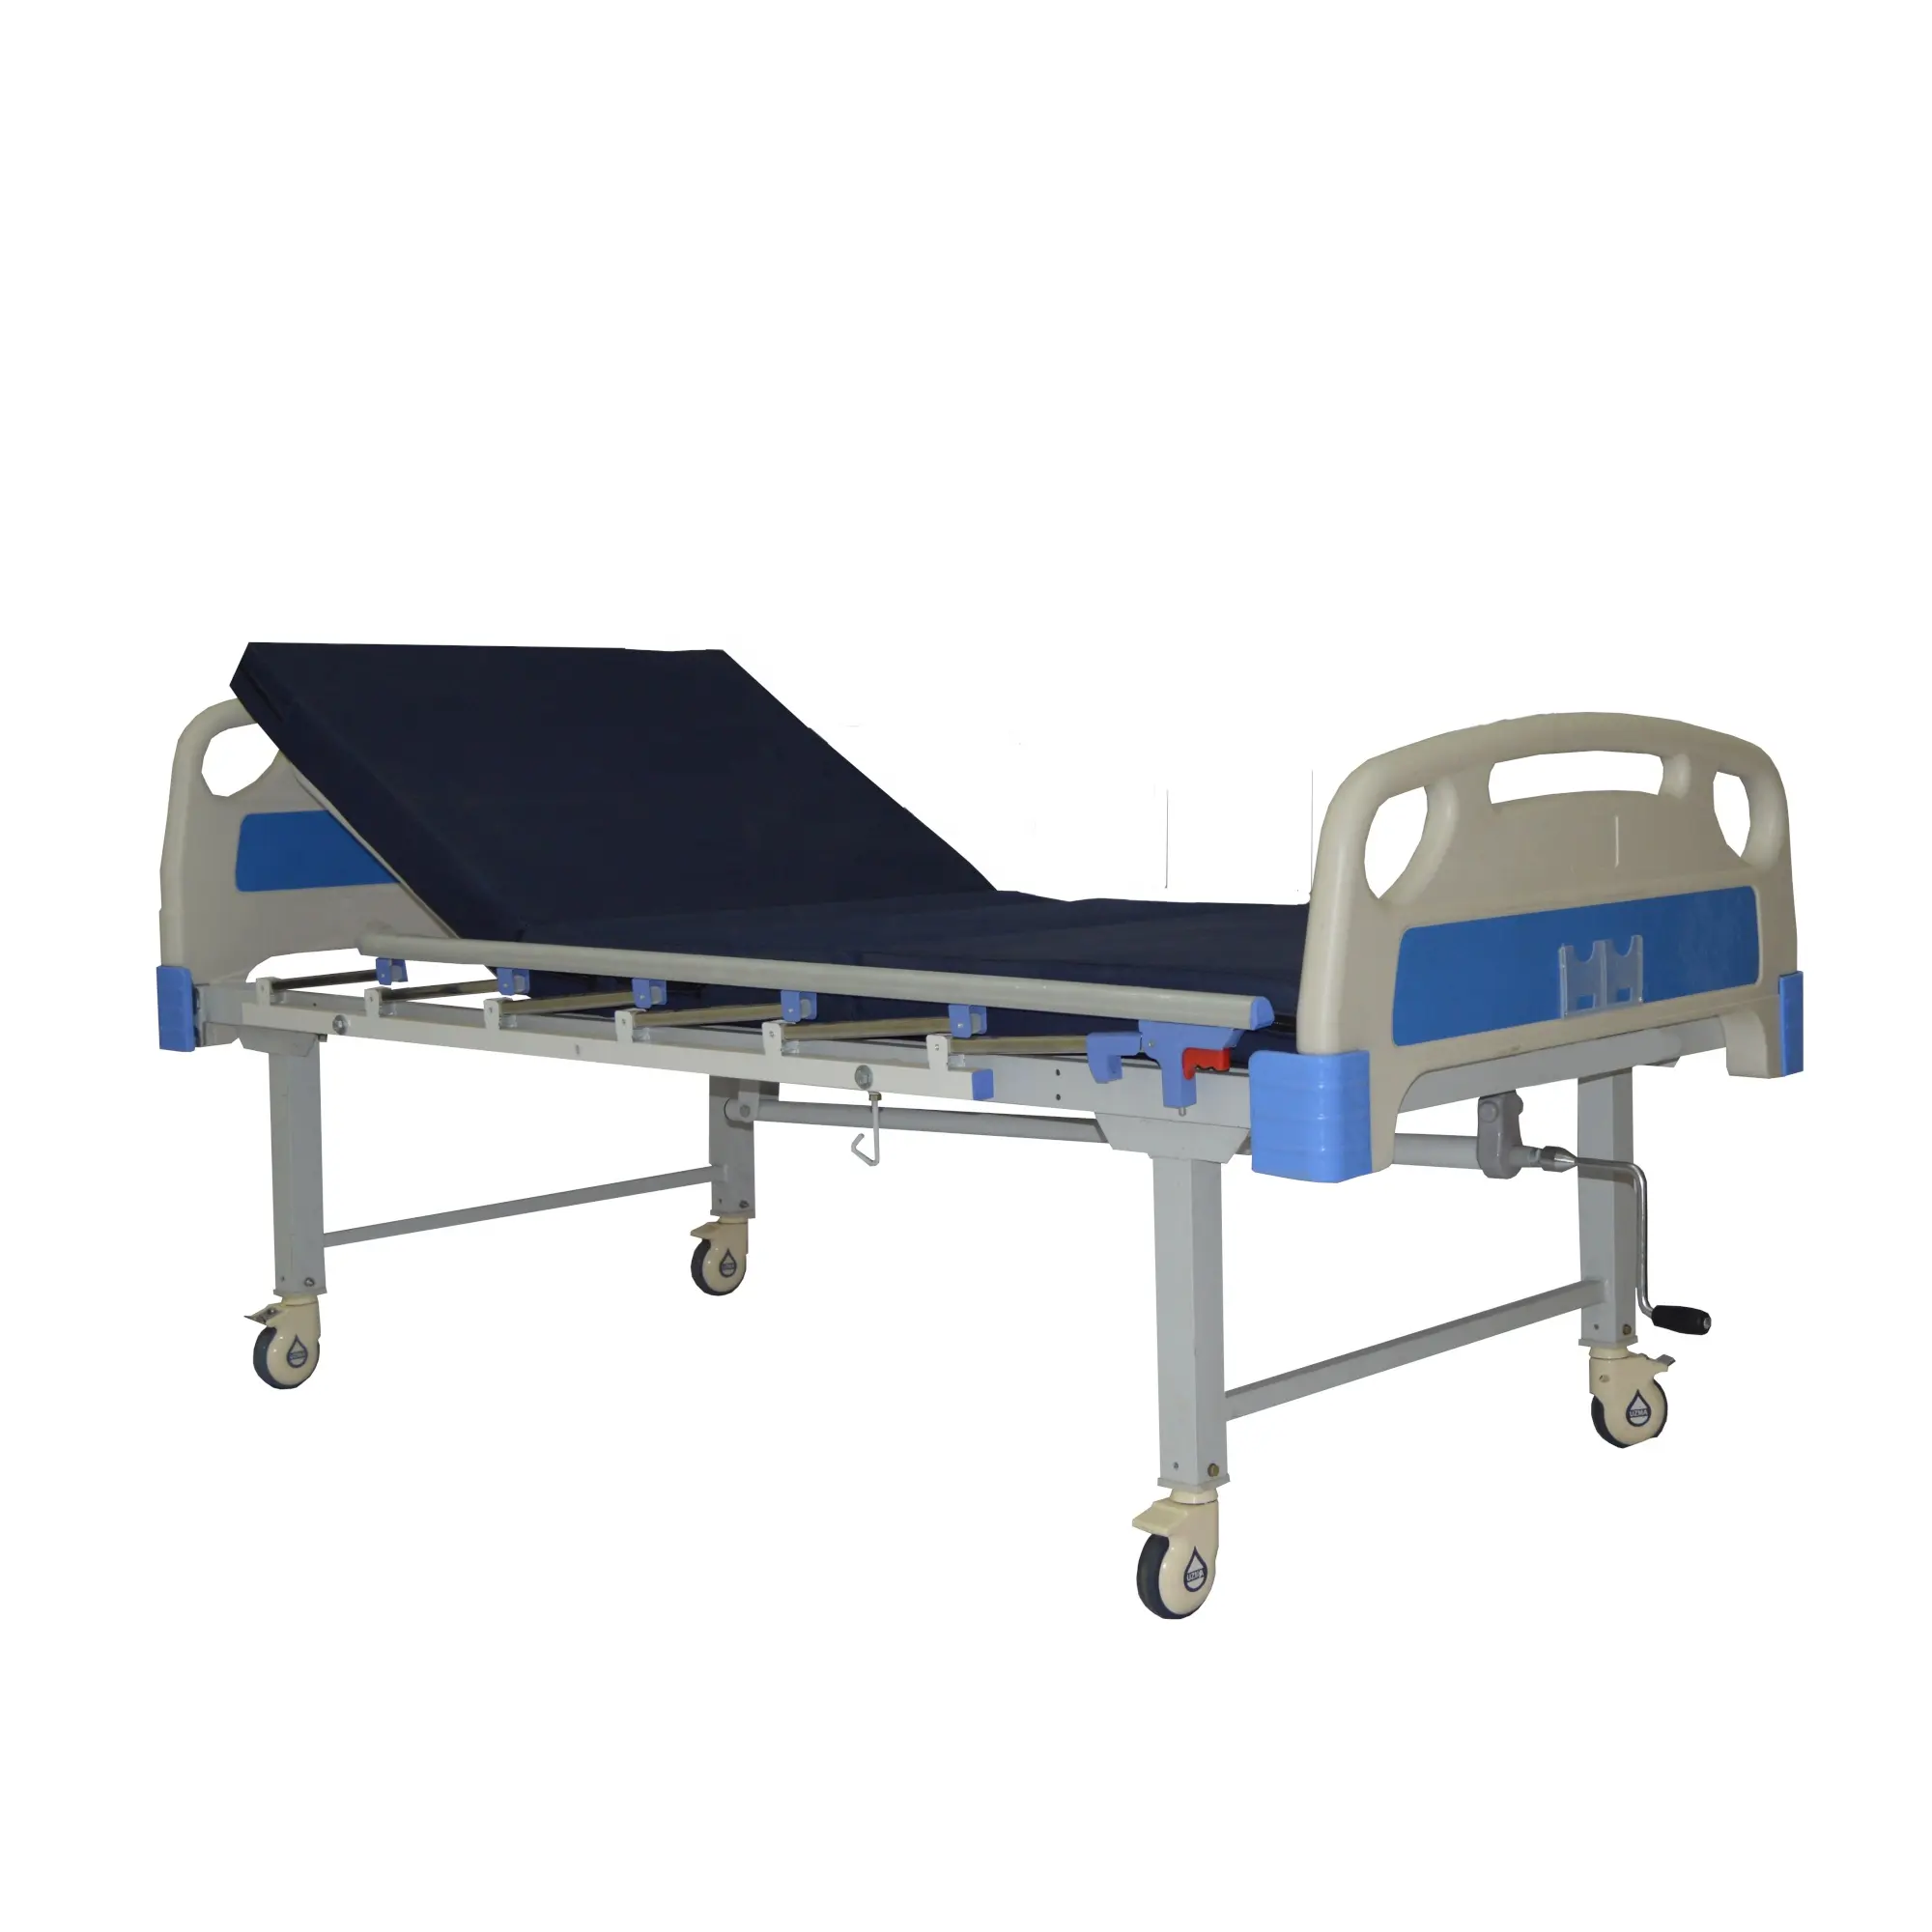 Hastane manuel yarı Fowler yatak iki fonksiyonlu hastane yatağı ayarlanabilir hasta bakımı yatak yatak